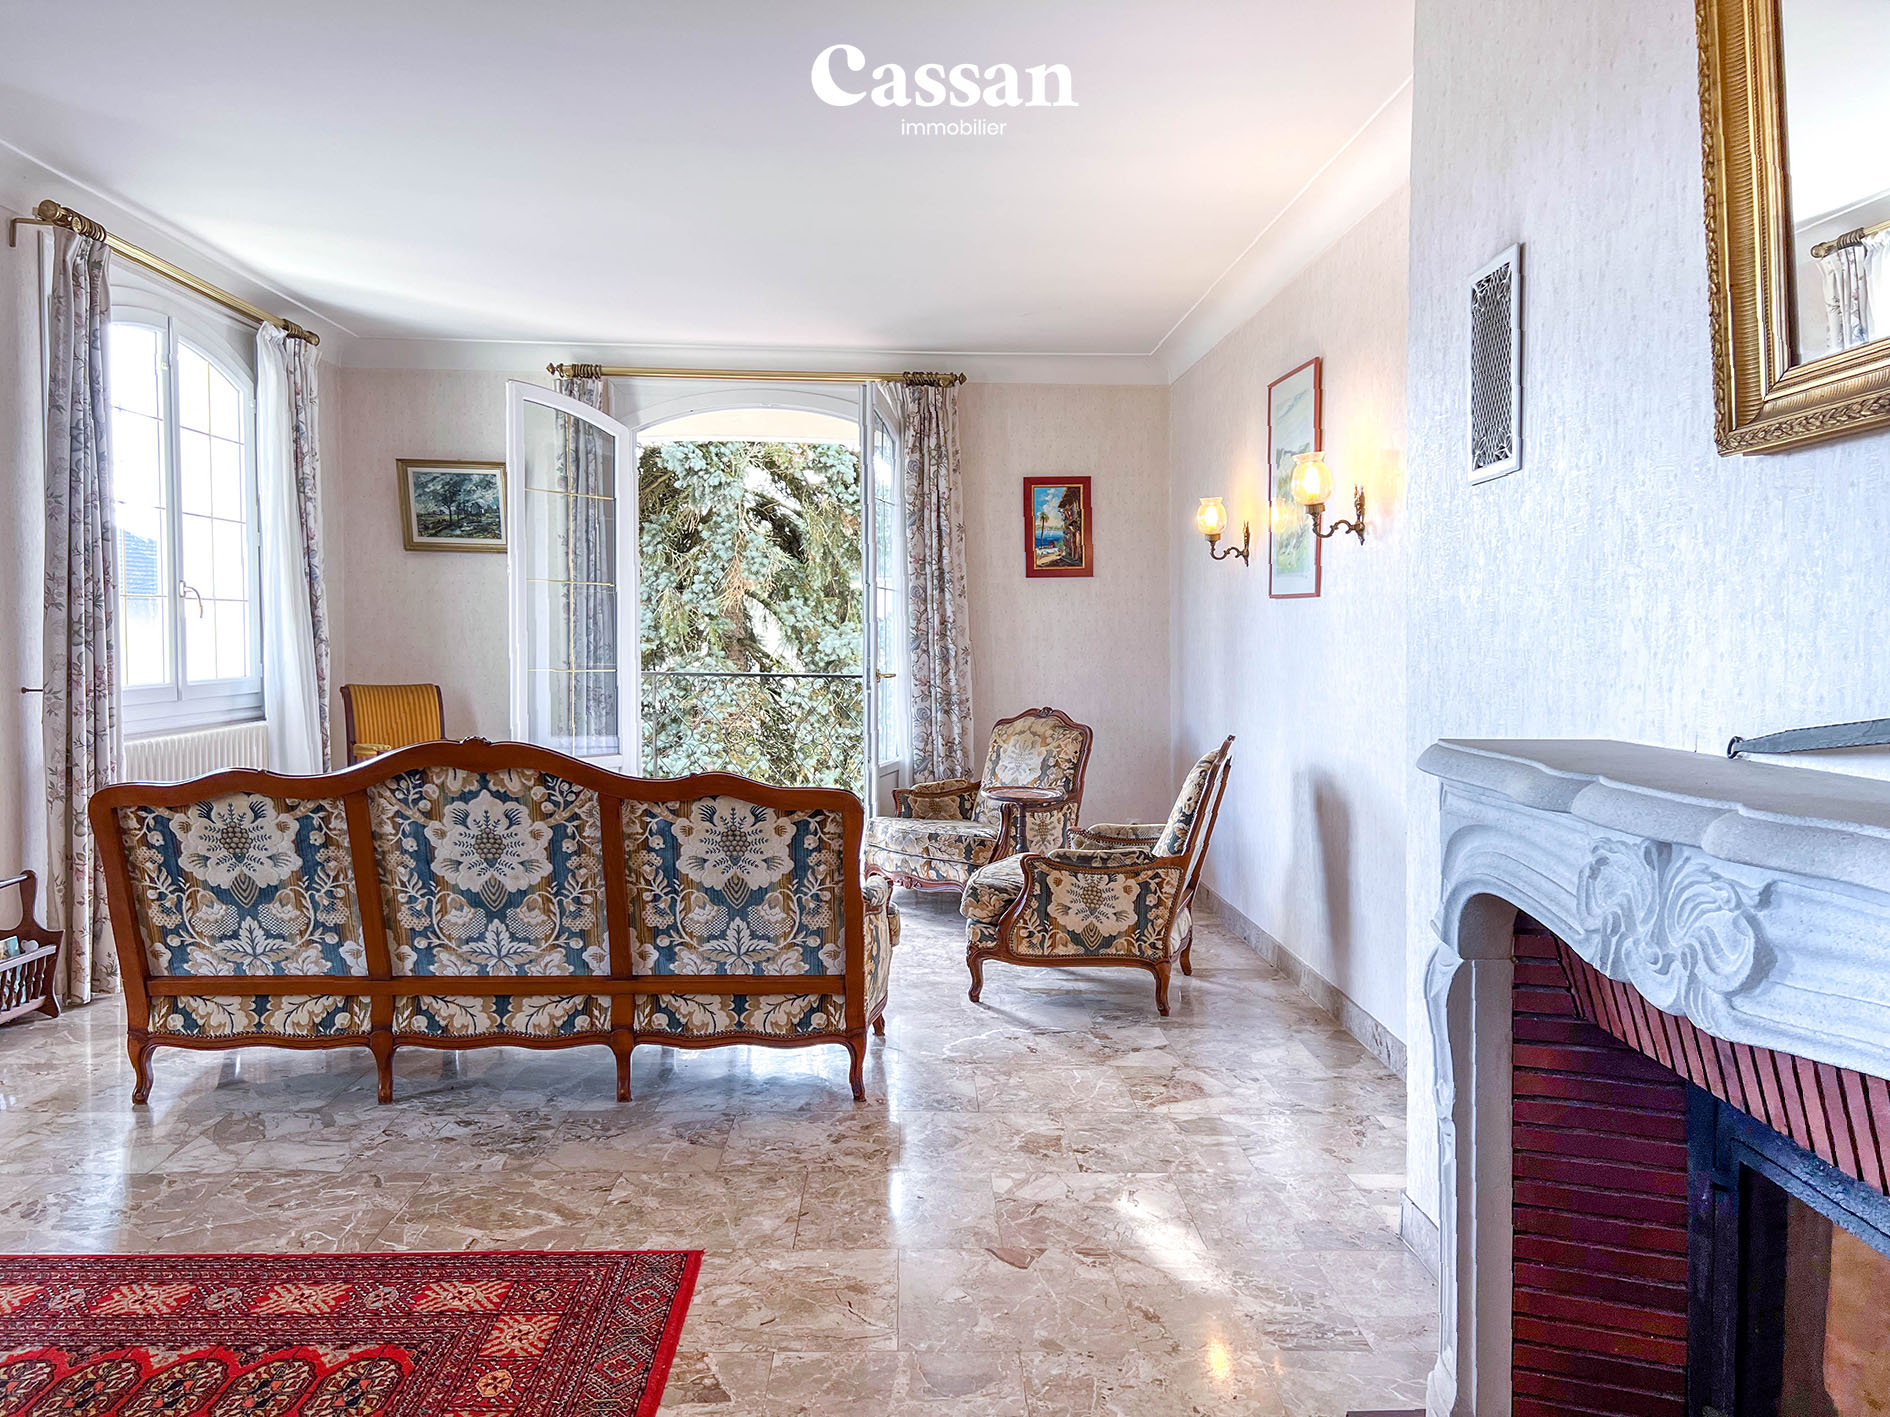 Séjour maison à vendre Aurillac Cassan immobilier